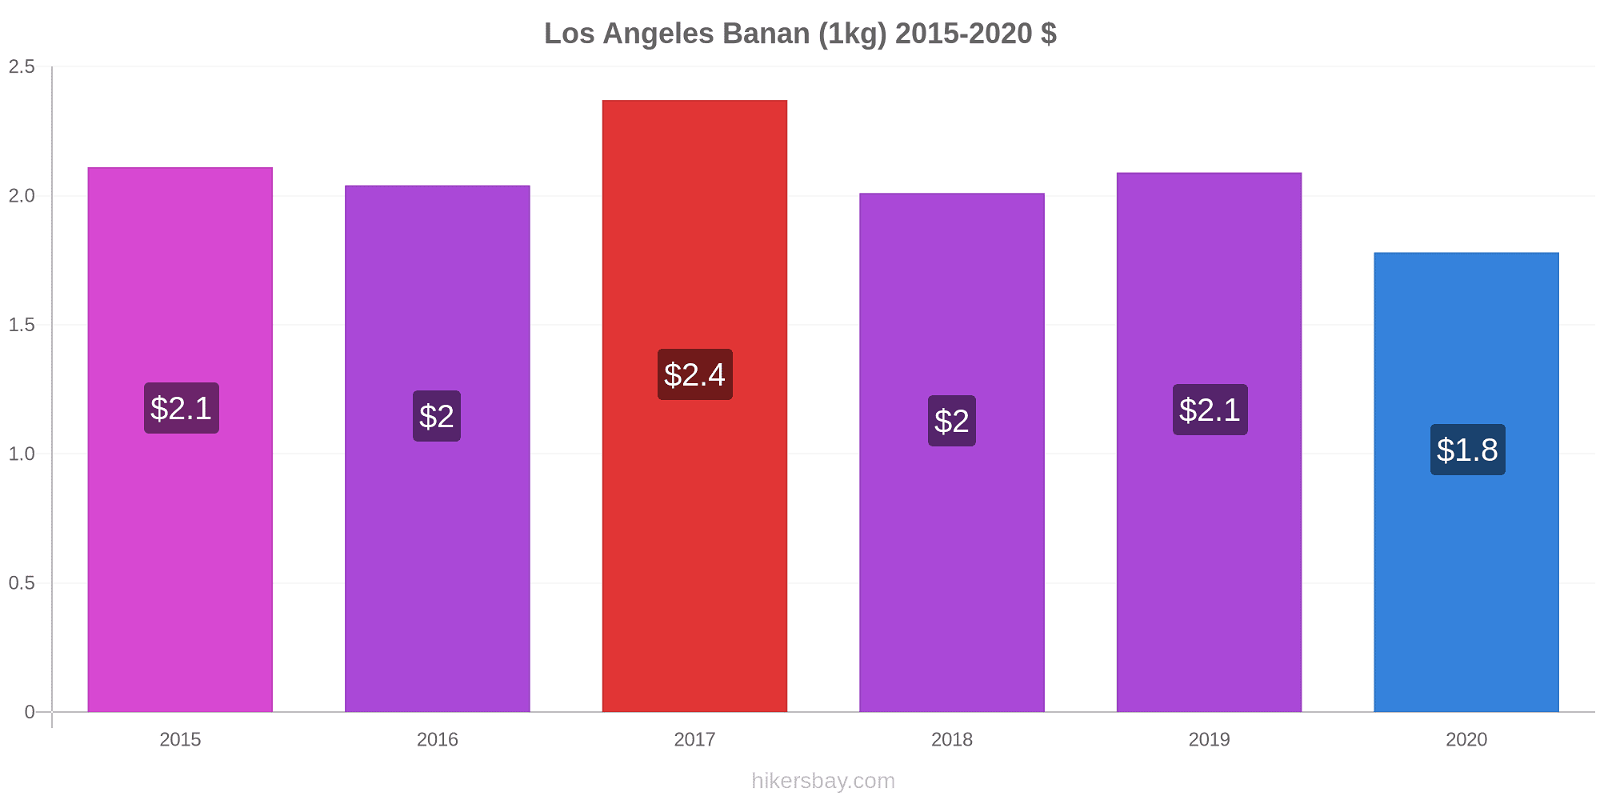 Los Angeles prisförändringar Banan (1kg) hikersbay.com